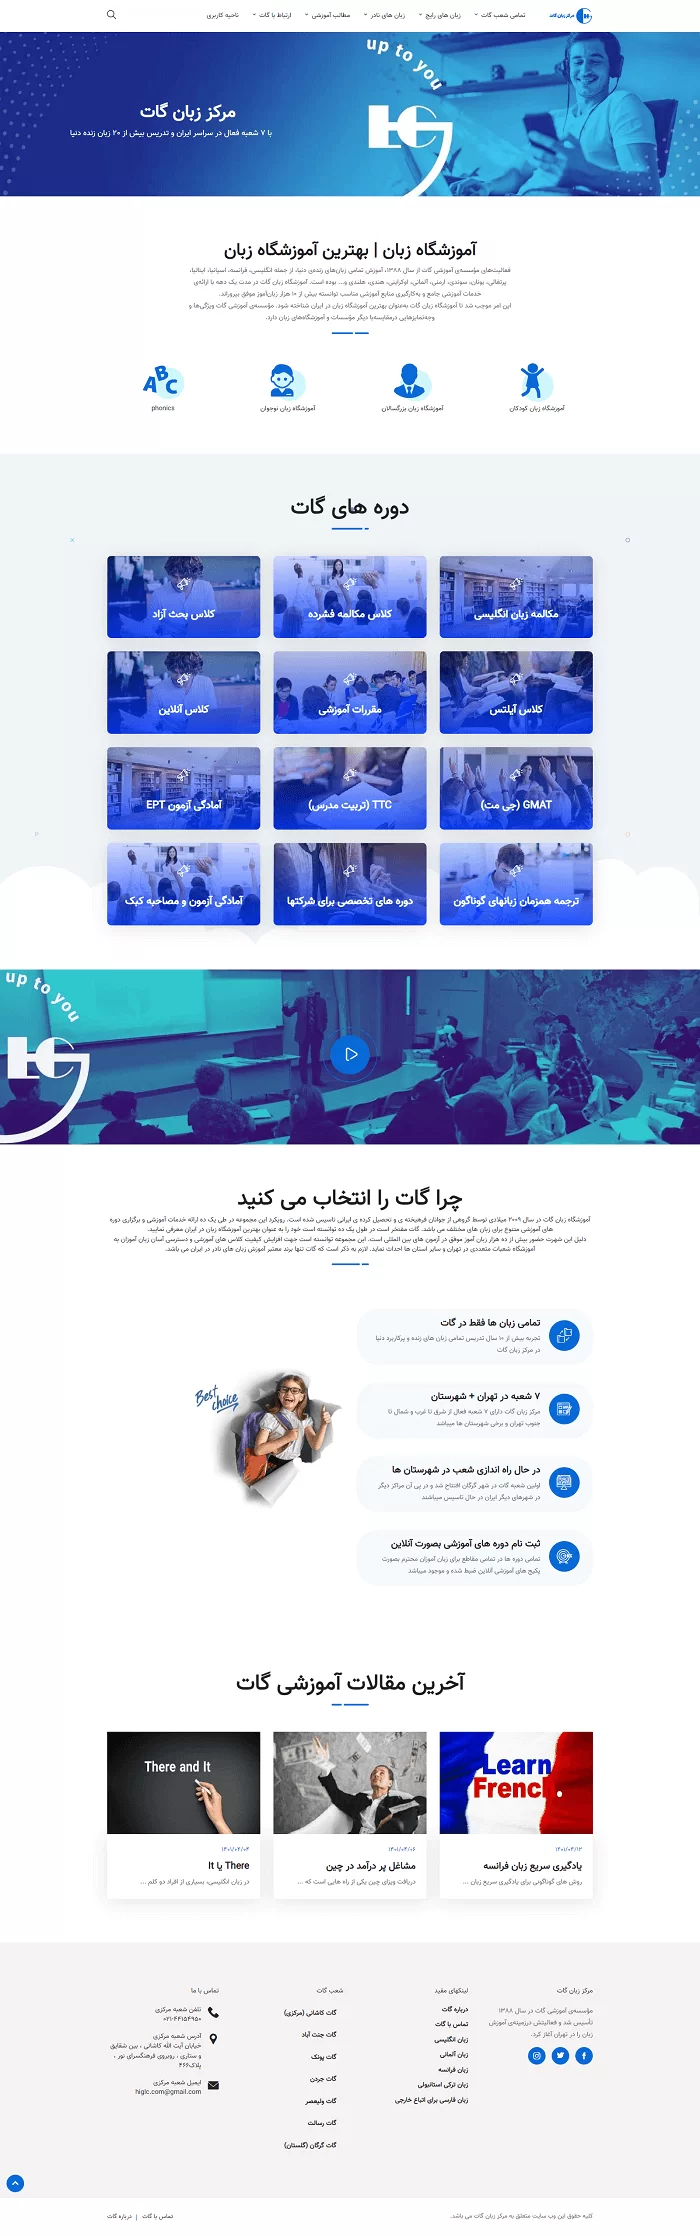 طراحی سایت مرکز زبان گات